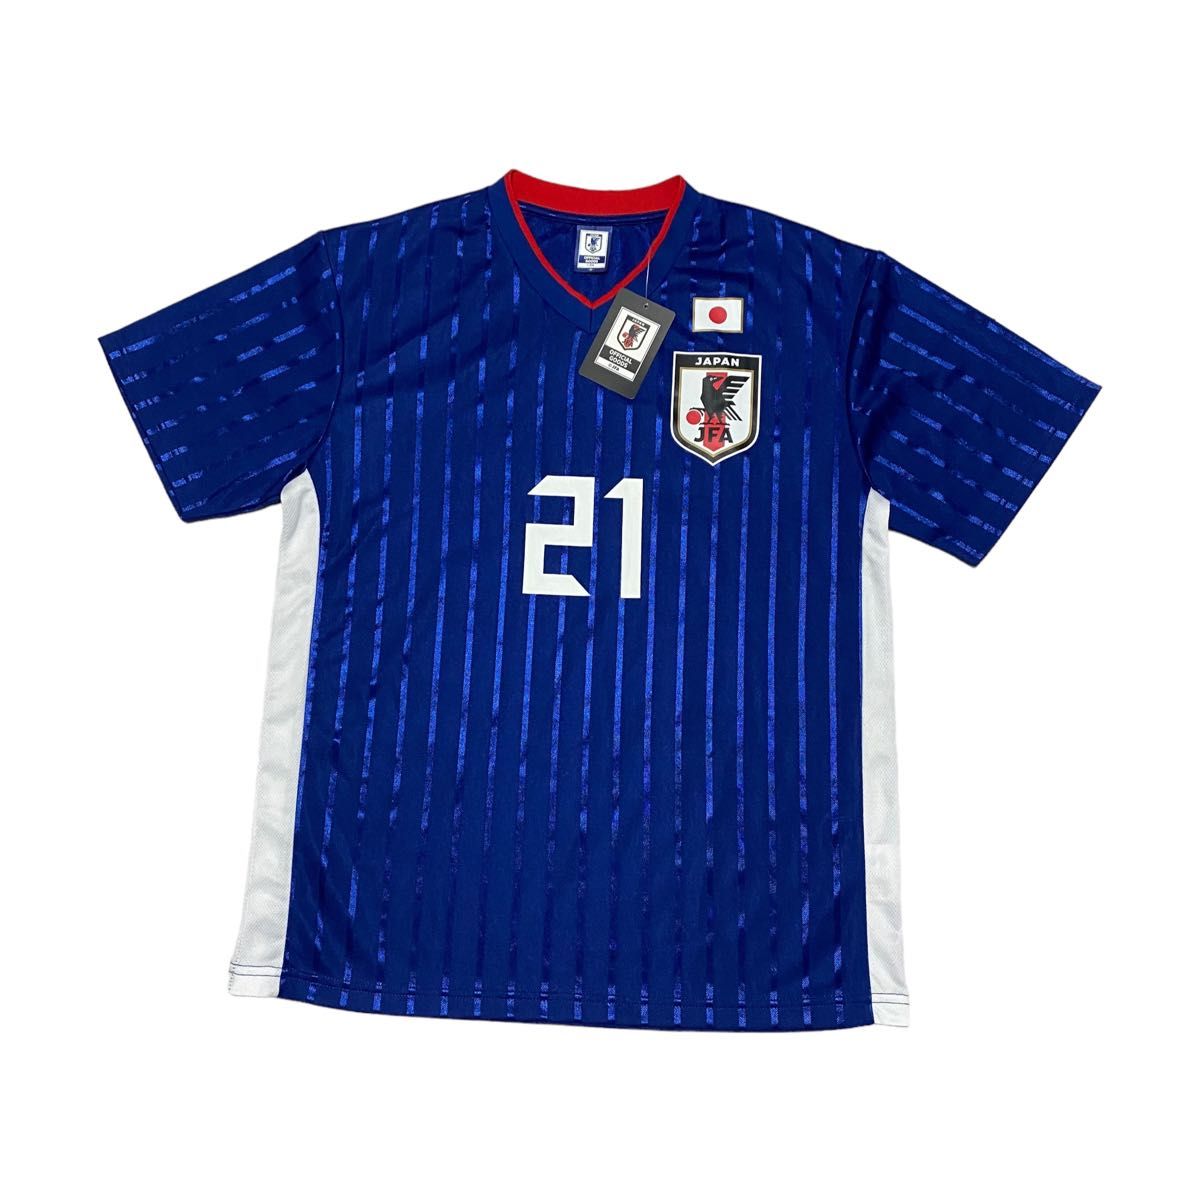 【未使用品】サッカー日本代表 プレイヤーズTシャツ ユニフォーム #21 堂安律 メンズ サイズM サムライブルー